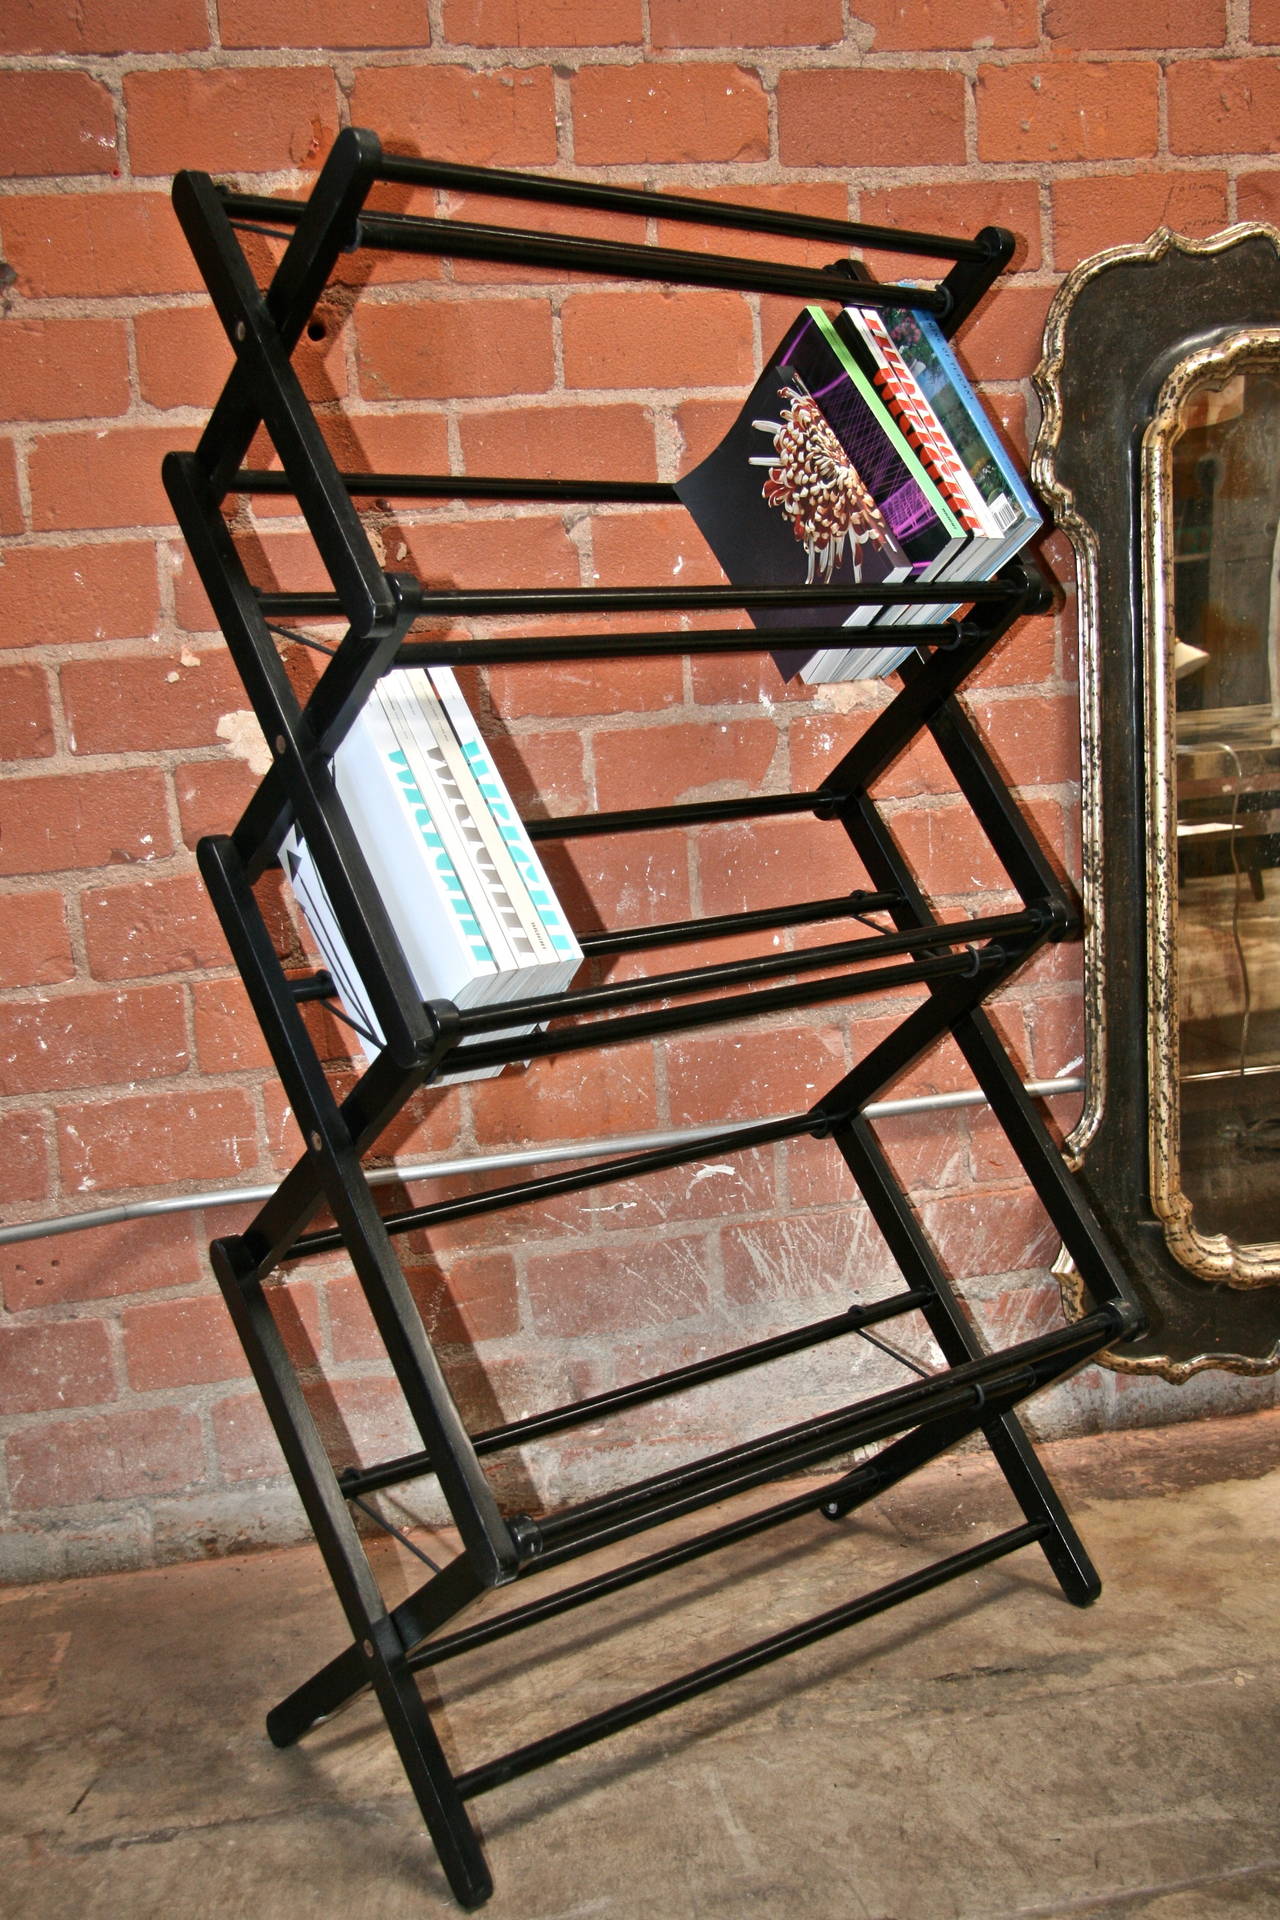 Vavavoom vico! Majestic Magistretti designed bookcase for any nook.